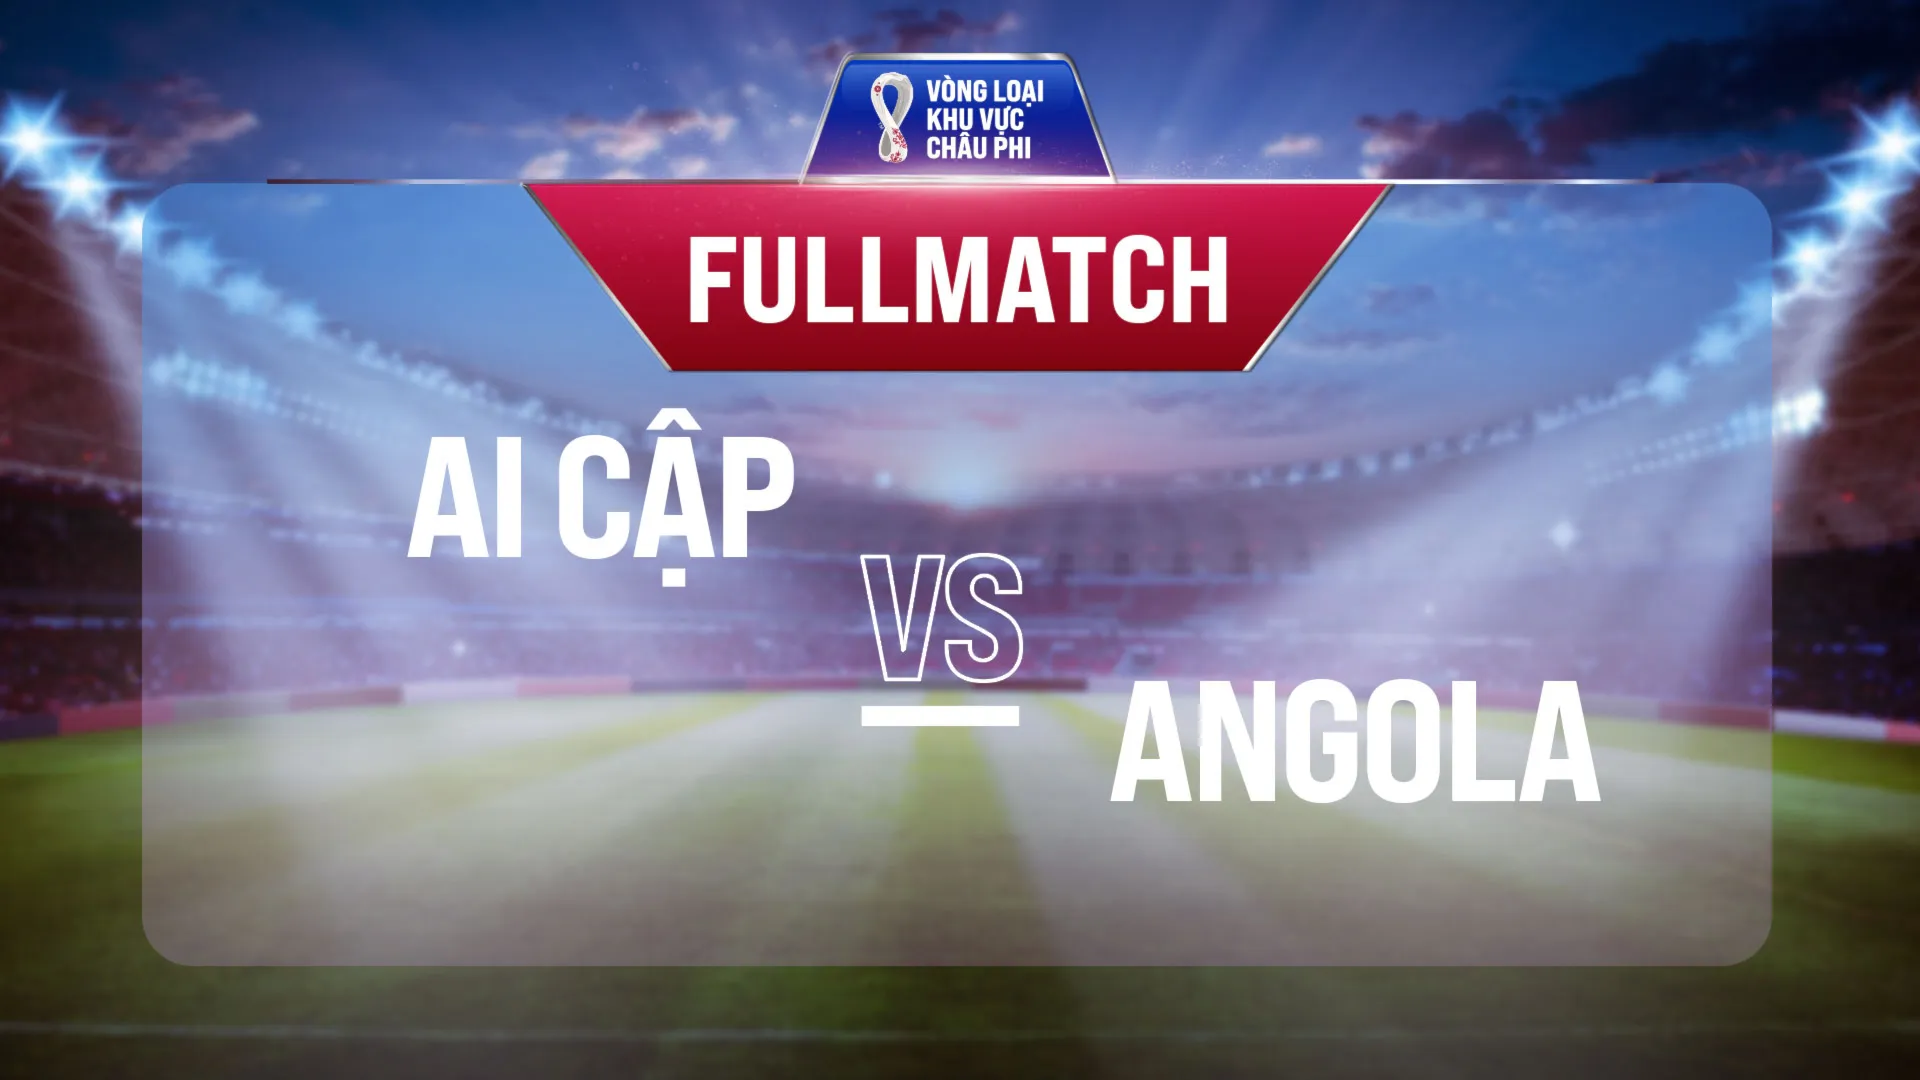 Full match Ai Cập - Angola (Vòng Loại World Cup 2022 - Khu vực châu Phi)